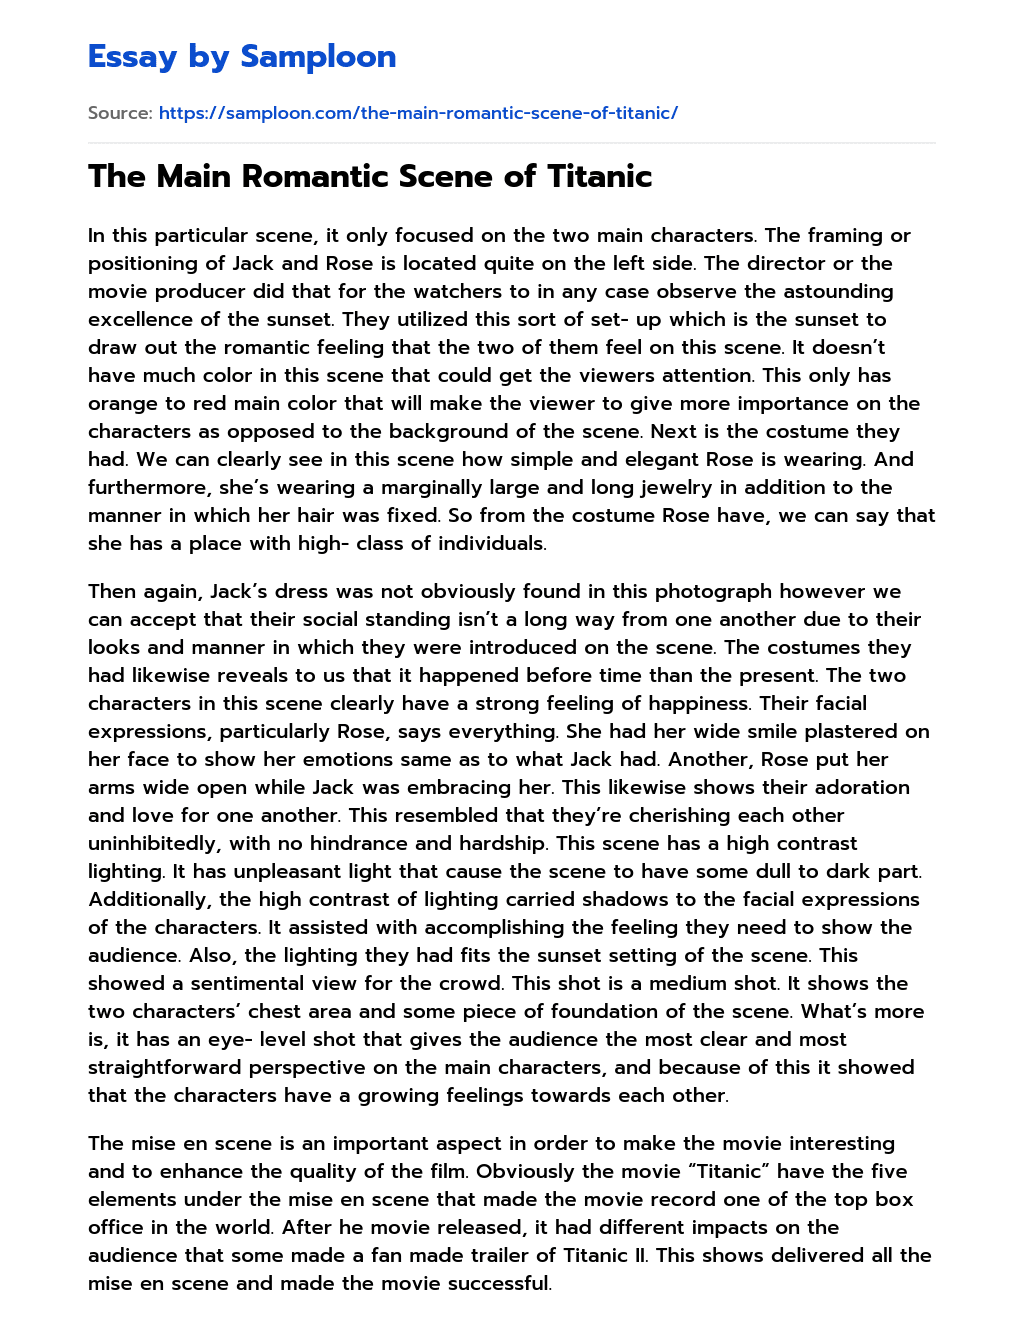 The Main Romantic Scene of Titanic essay